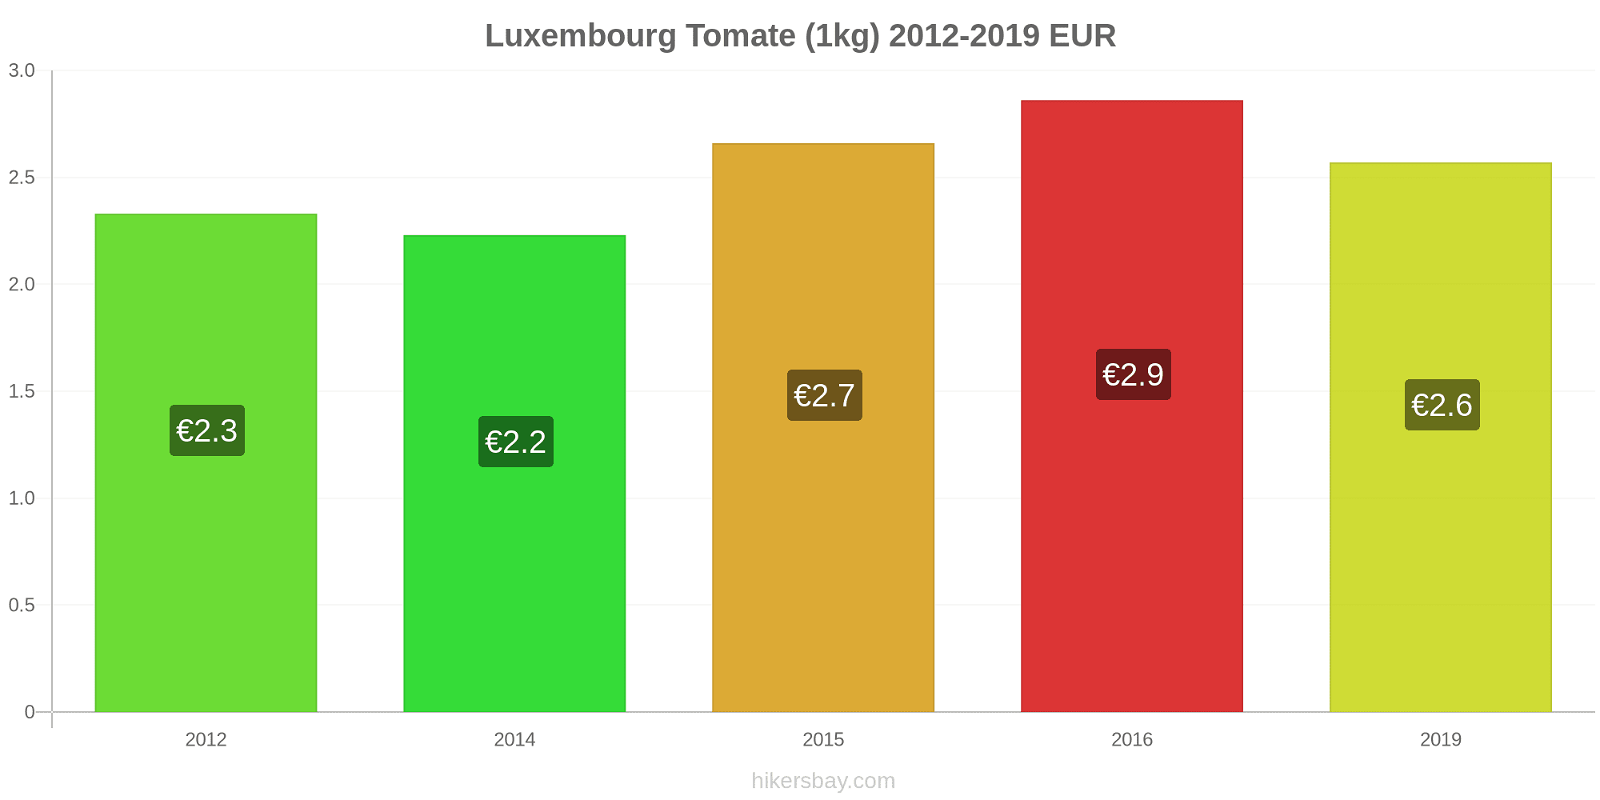 Luxembourg changements de prix Tomate (1kg) hikersbay.com